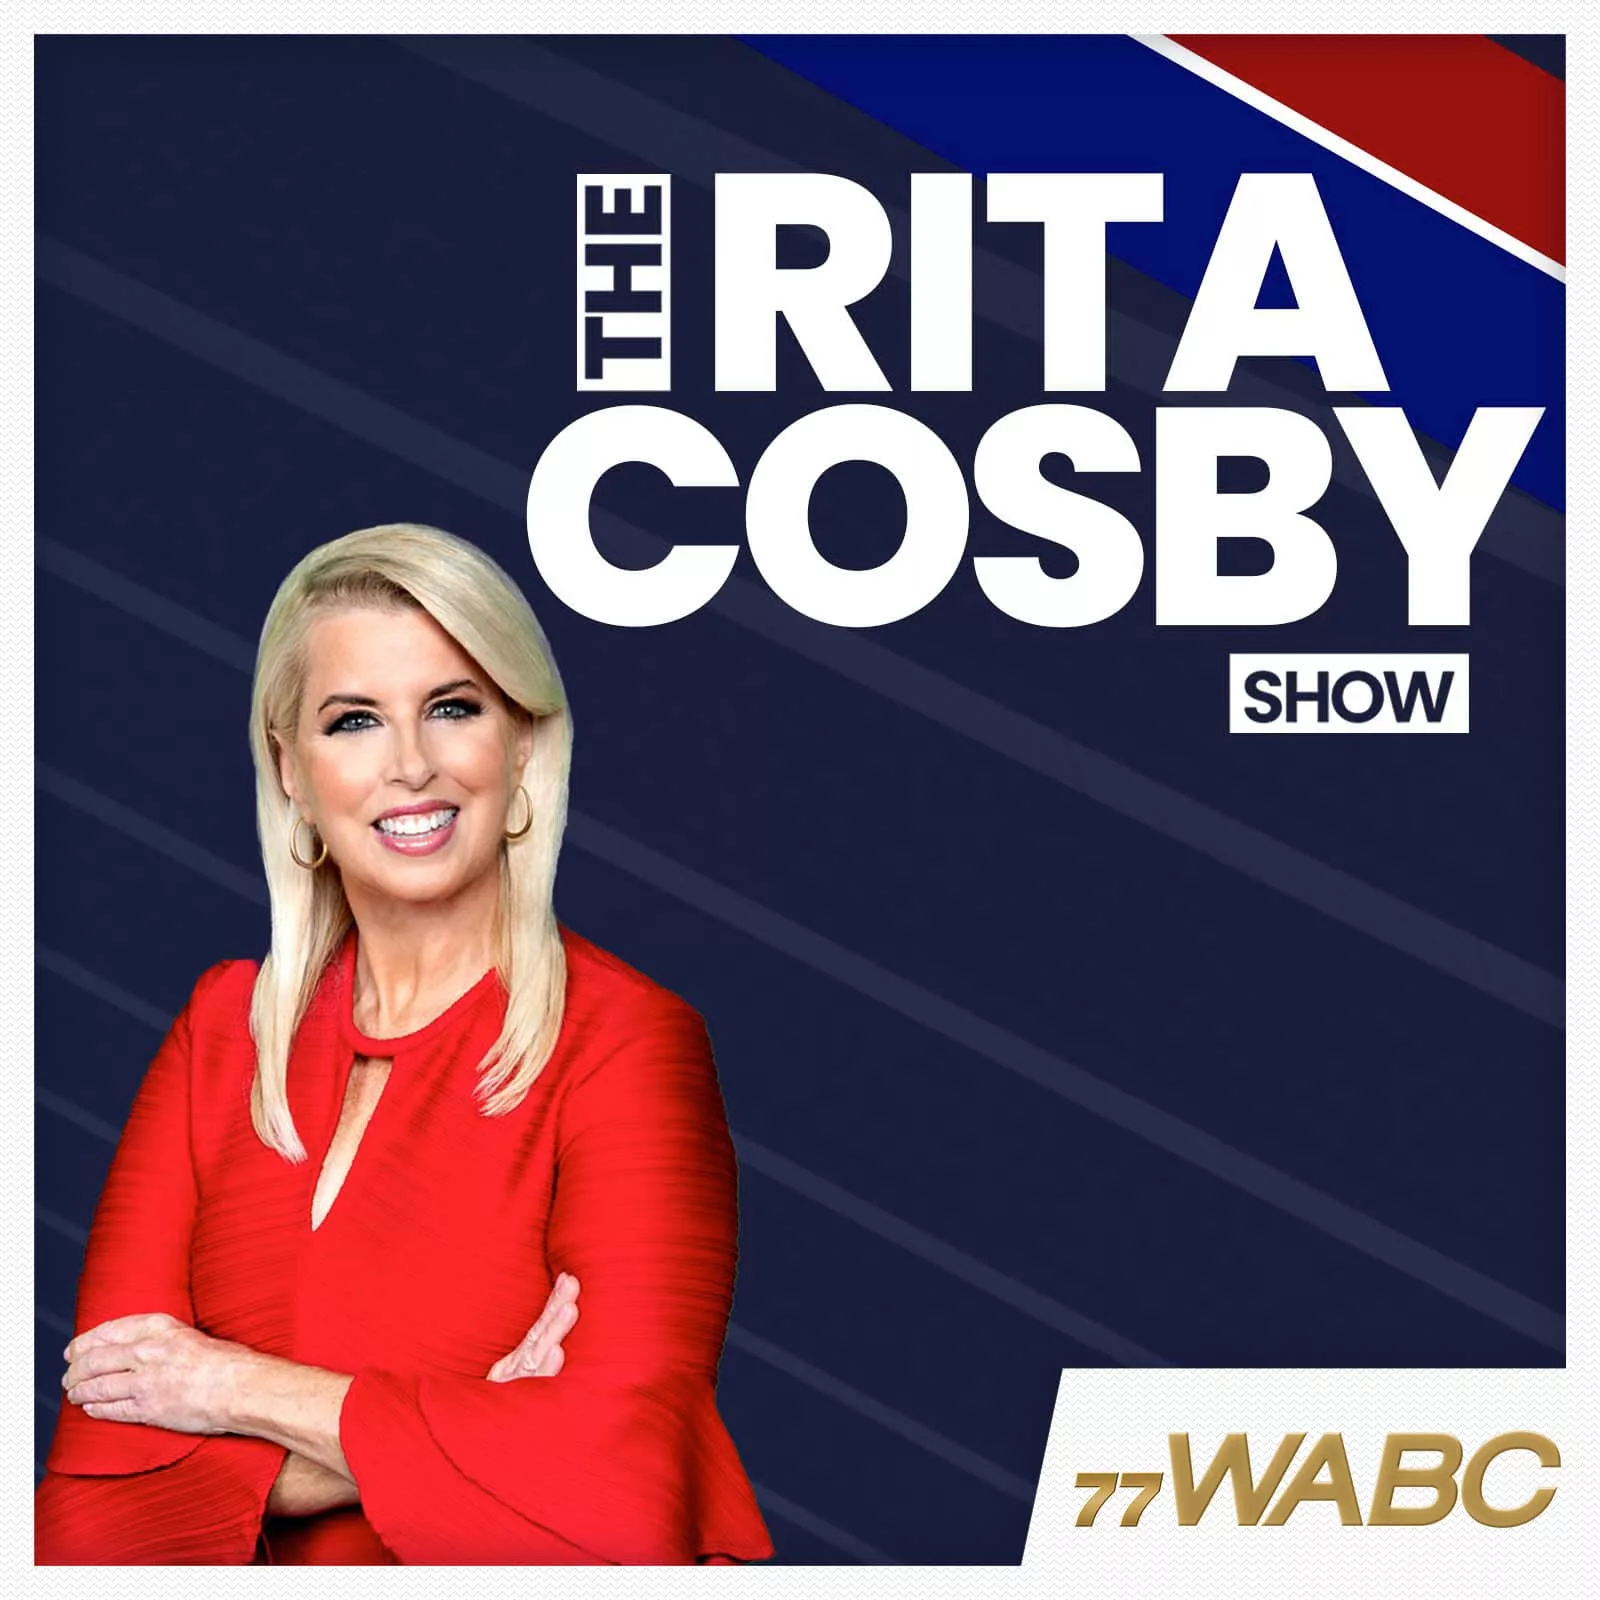 rita-cosby-podcast-new-logo912464